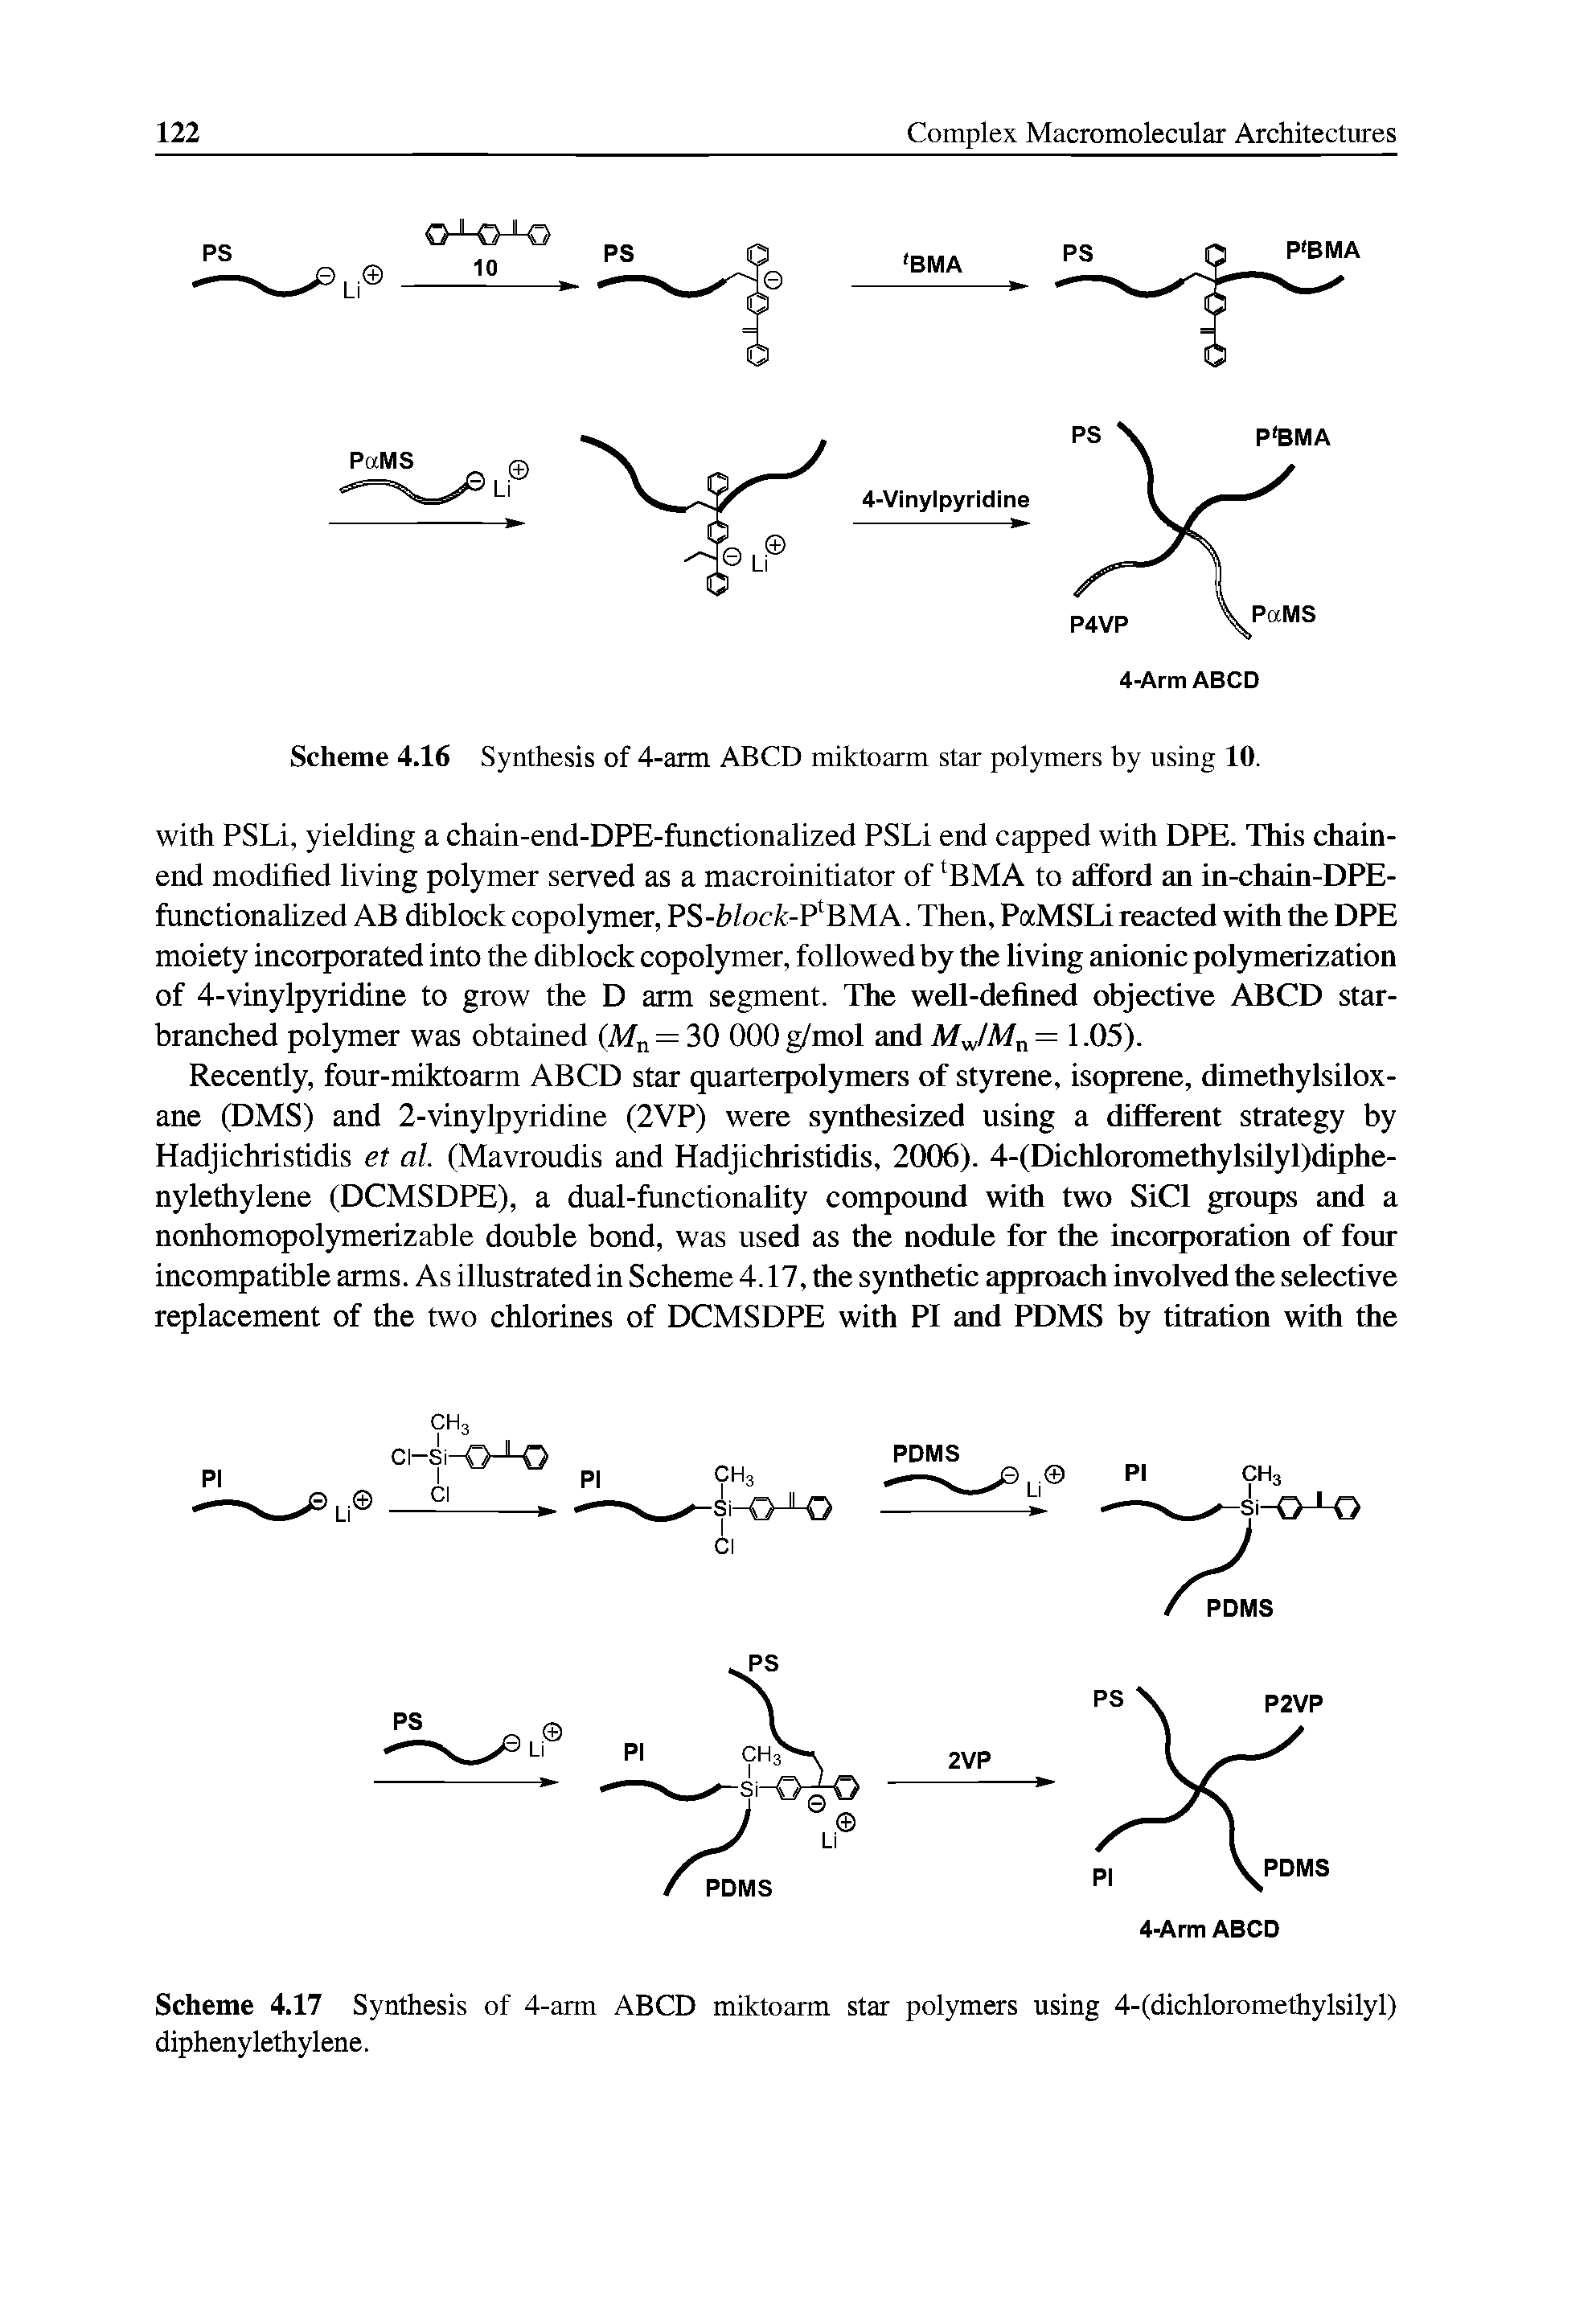 Scheme 4.17 Synthesis of 4-arm ABCD miktoarm star polymers using 4-(dichloromethylsilyl) dipheny lethylene.